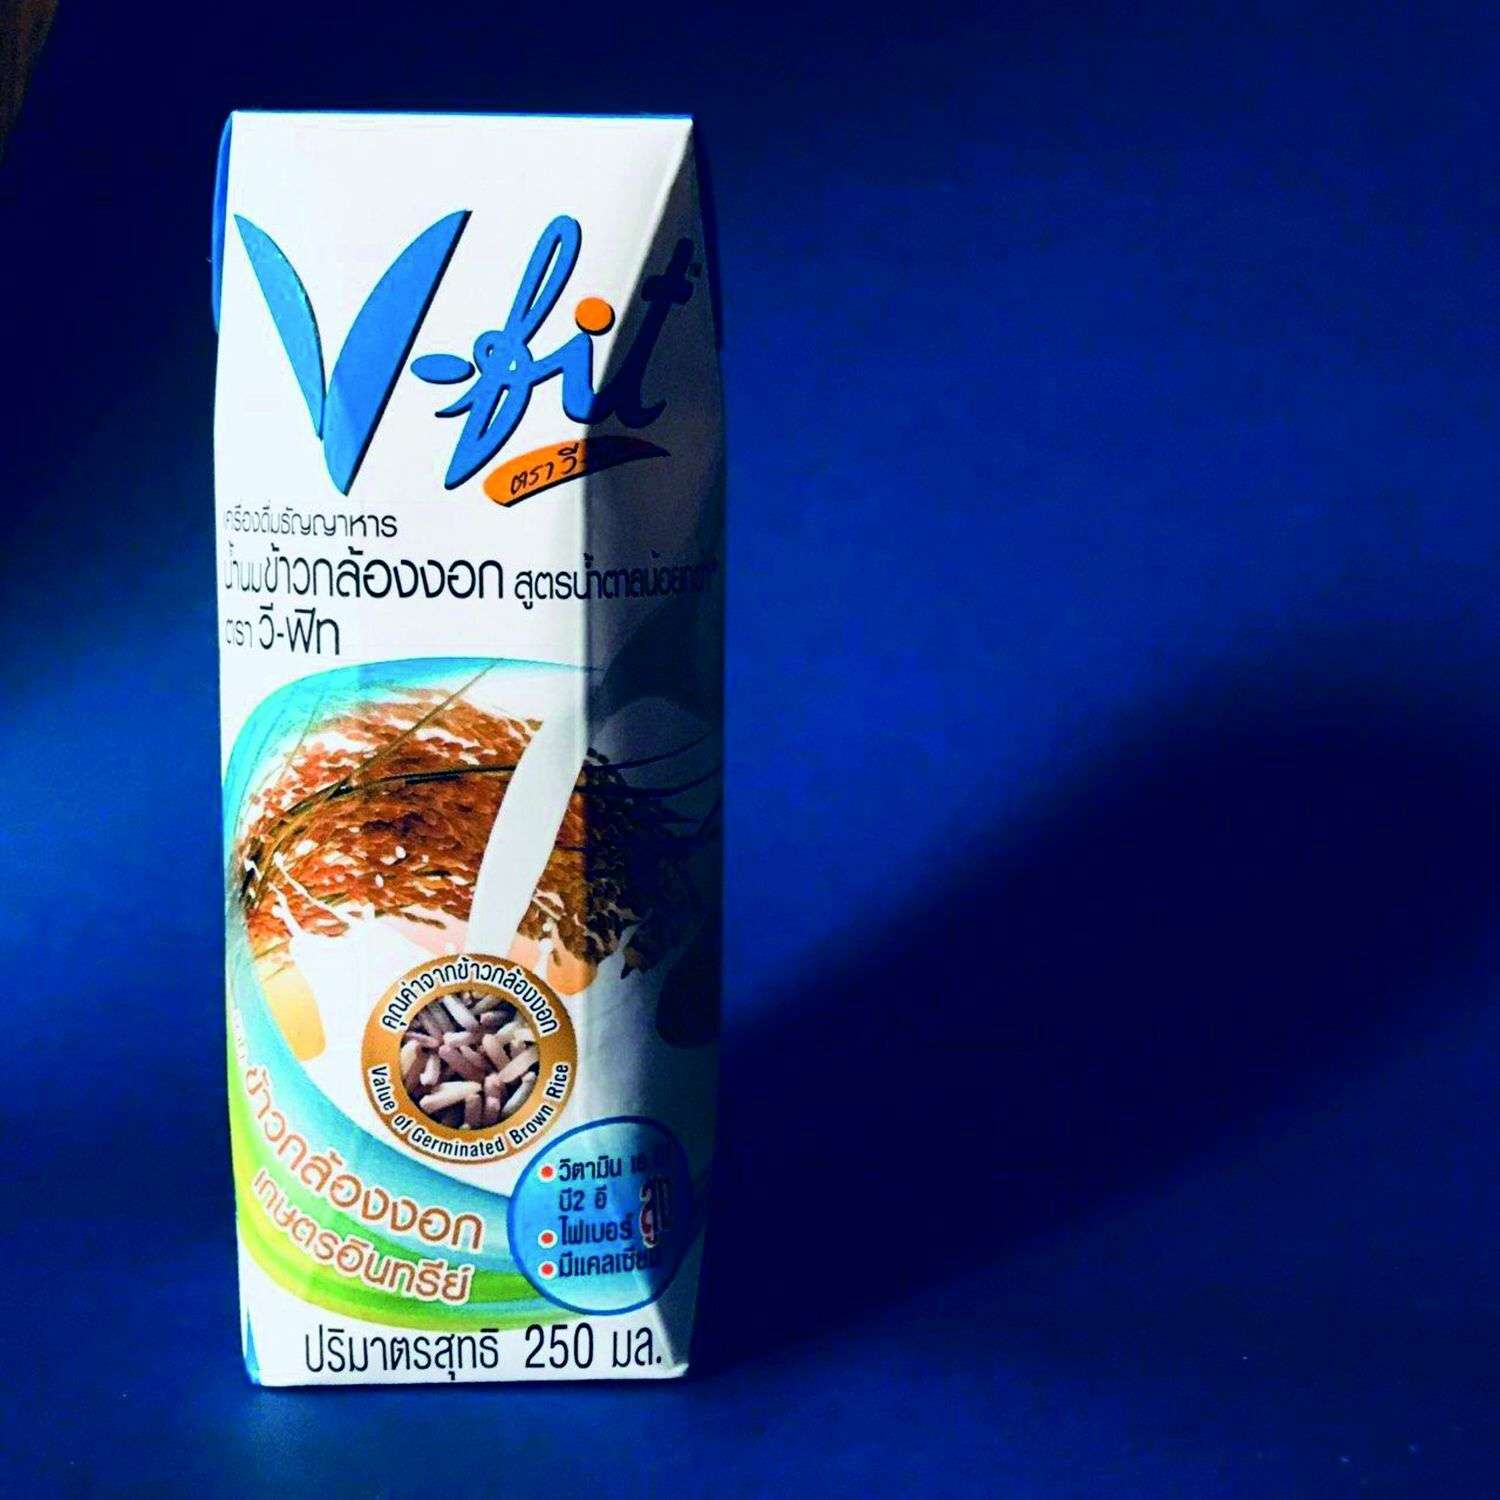 Молоко V-fit коричневого риса без сахара 250мл - фото 2